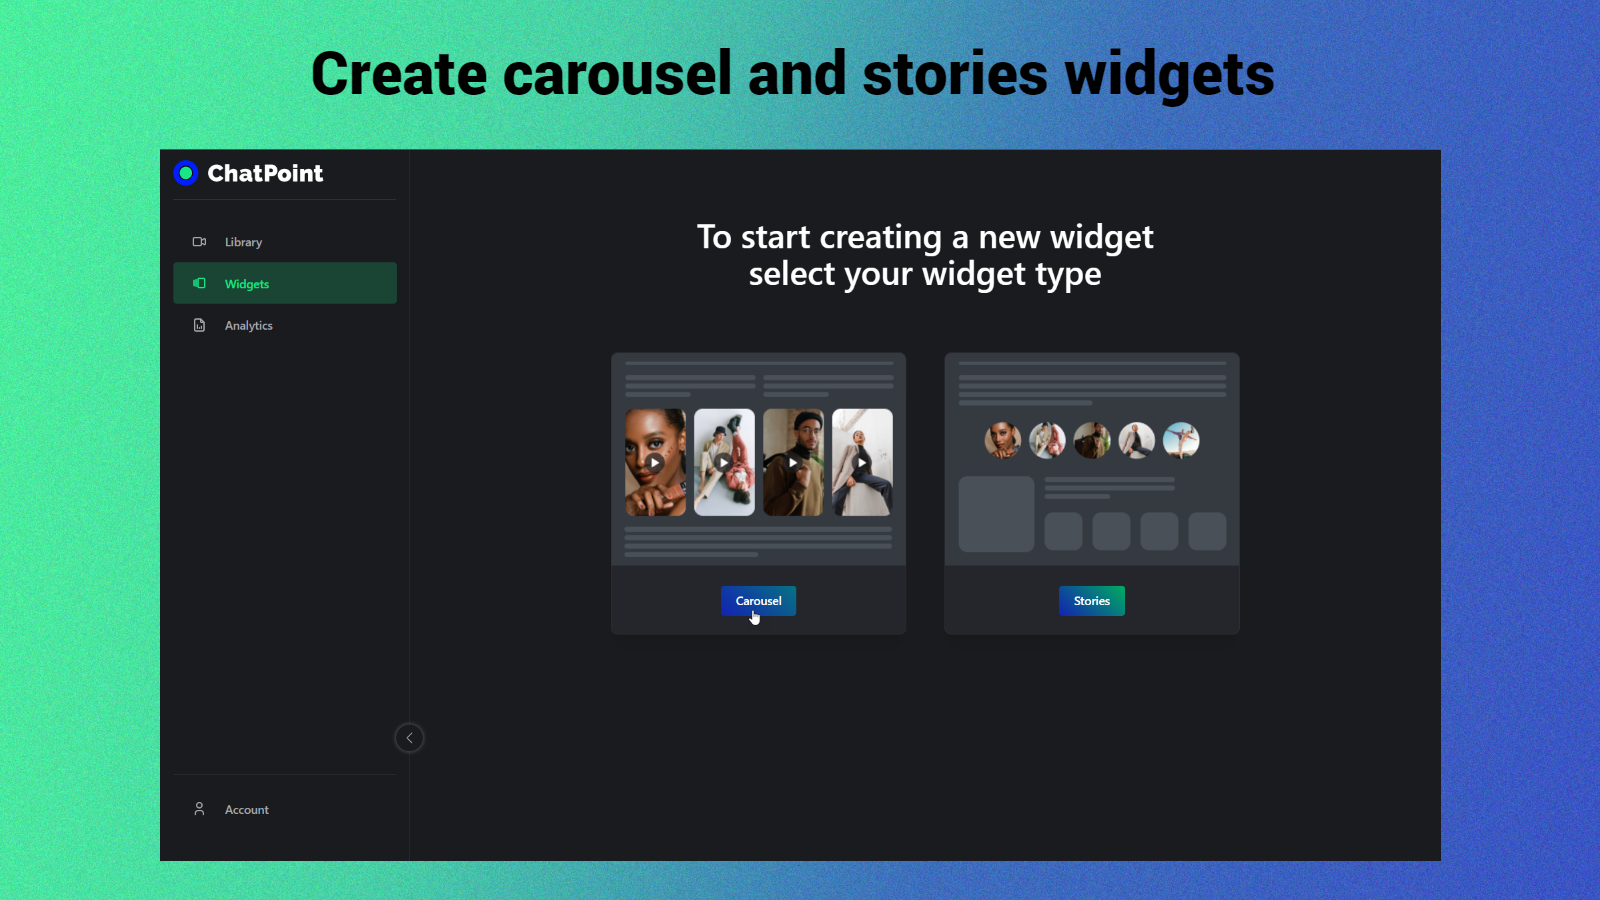 Füge Karussell- und Stories-Widgets zu deinen Home-, Produkt- und Sammlungsseiten hinzu